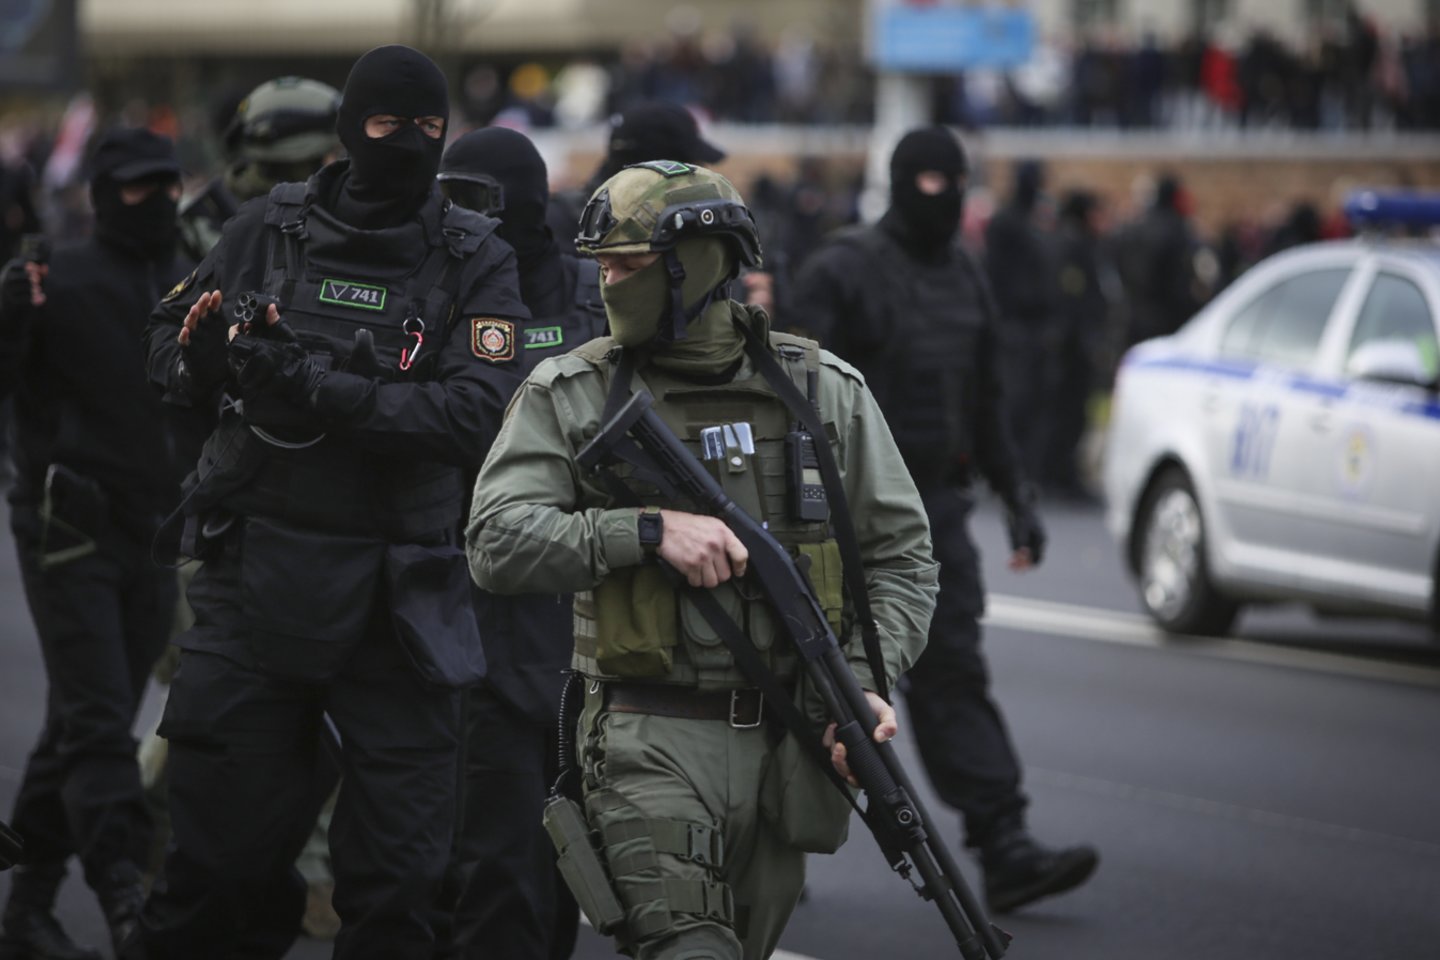  Rusija pranešė per koordinuotus reidus sulaikiusi 19 įtariamų islamistų.  <br>AP/Scanpix nuotr.